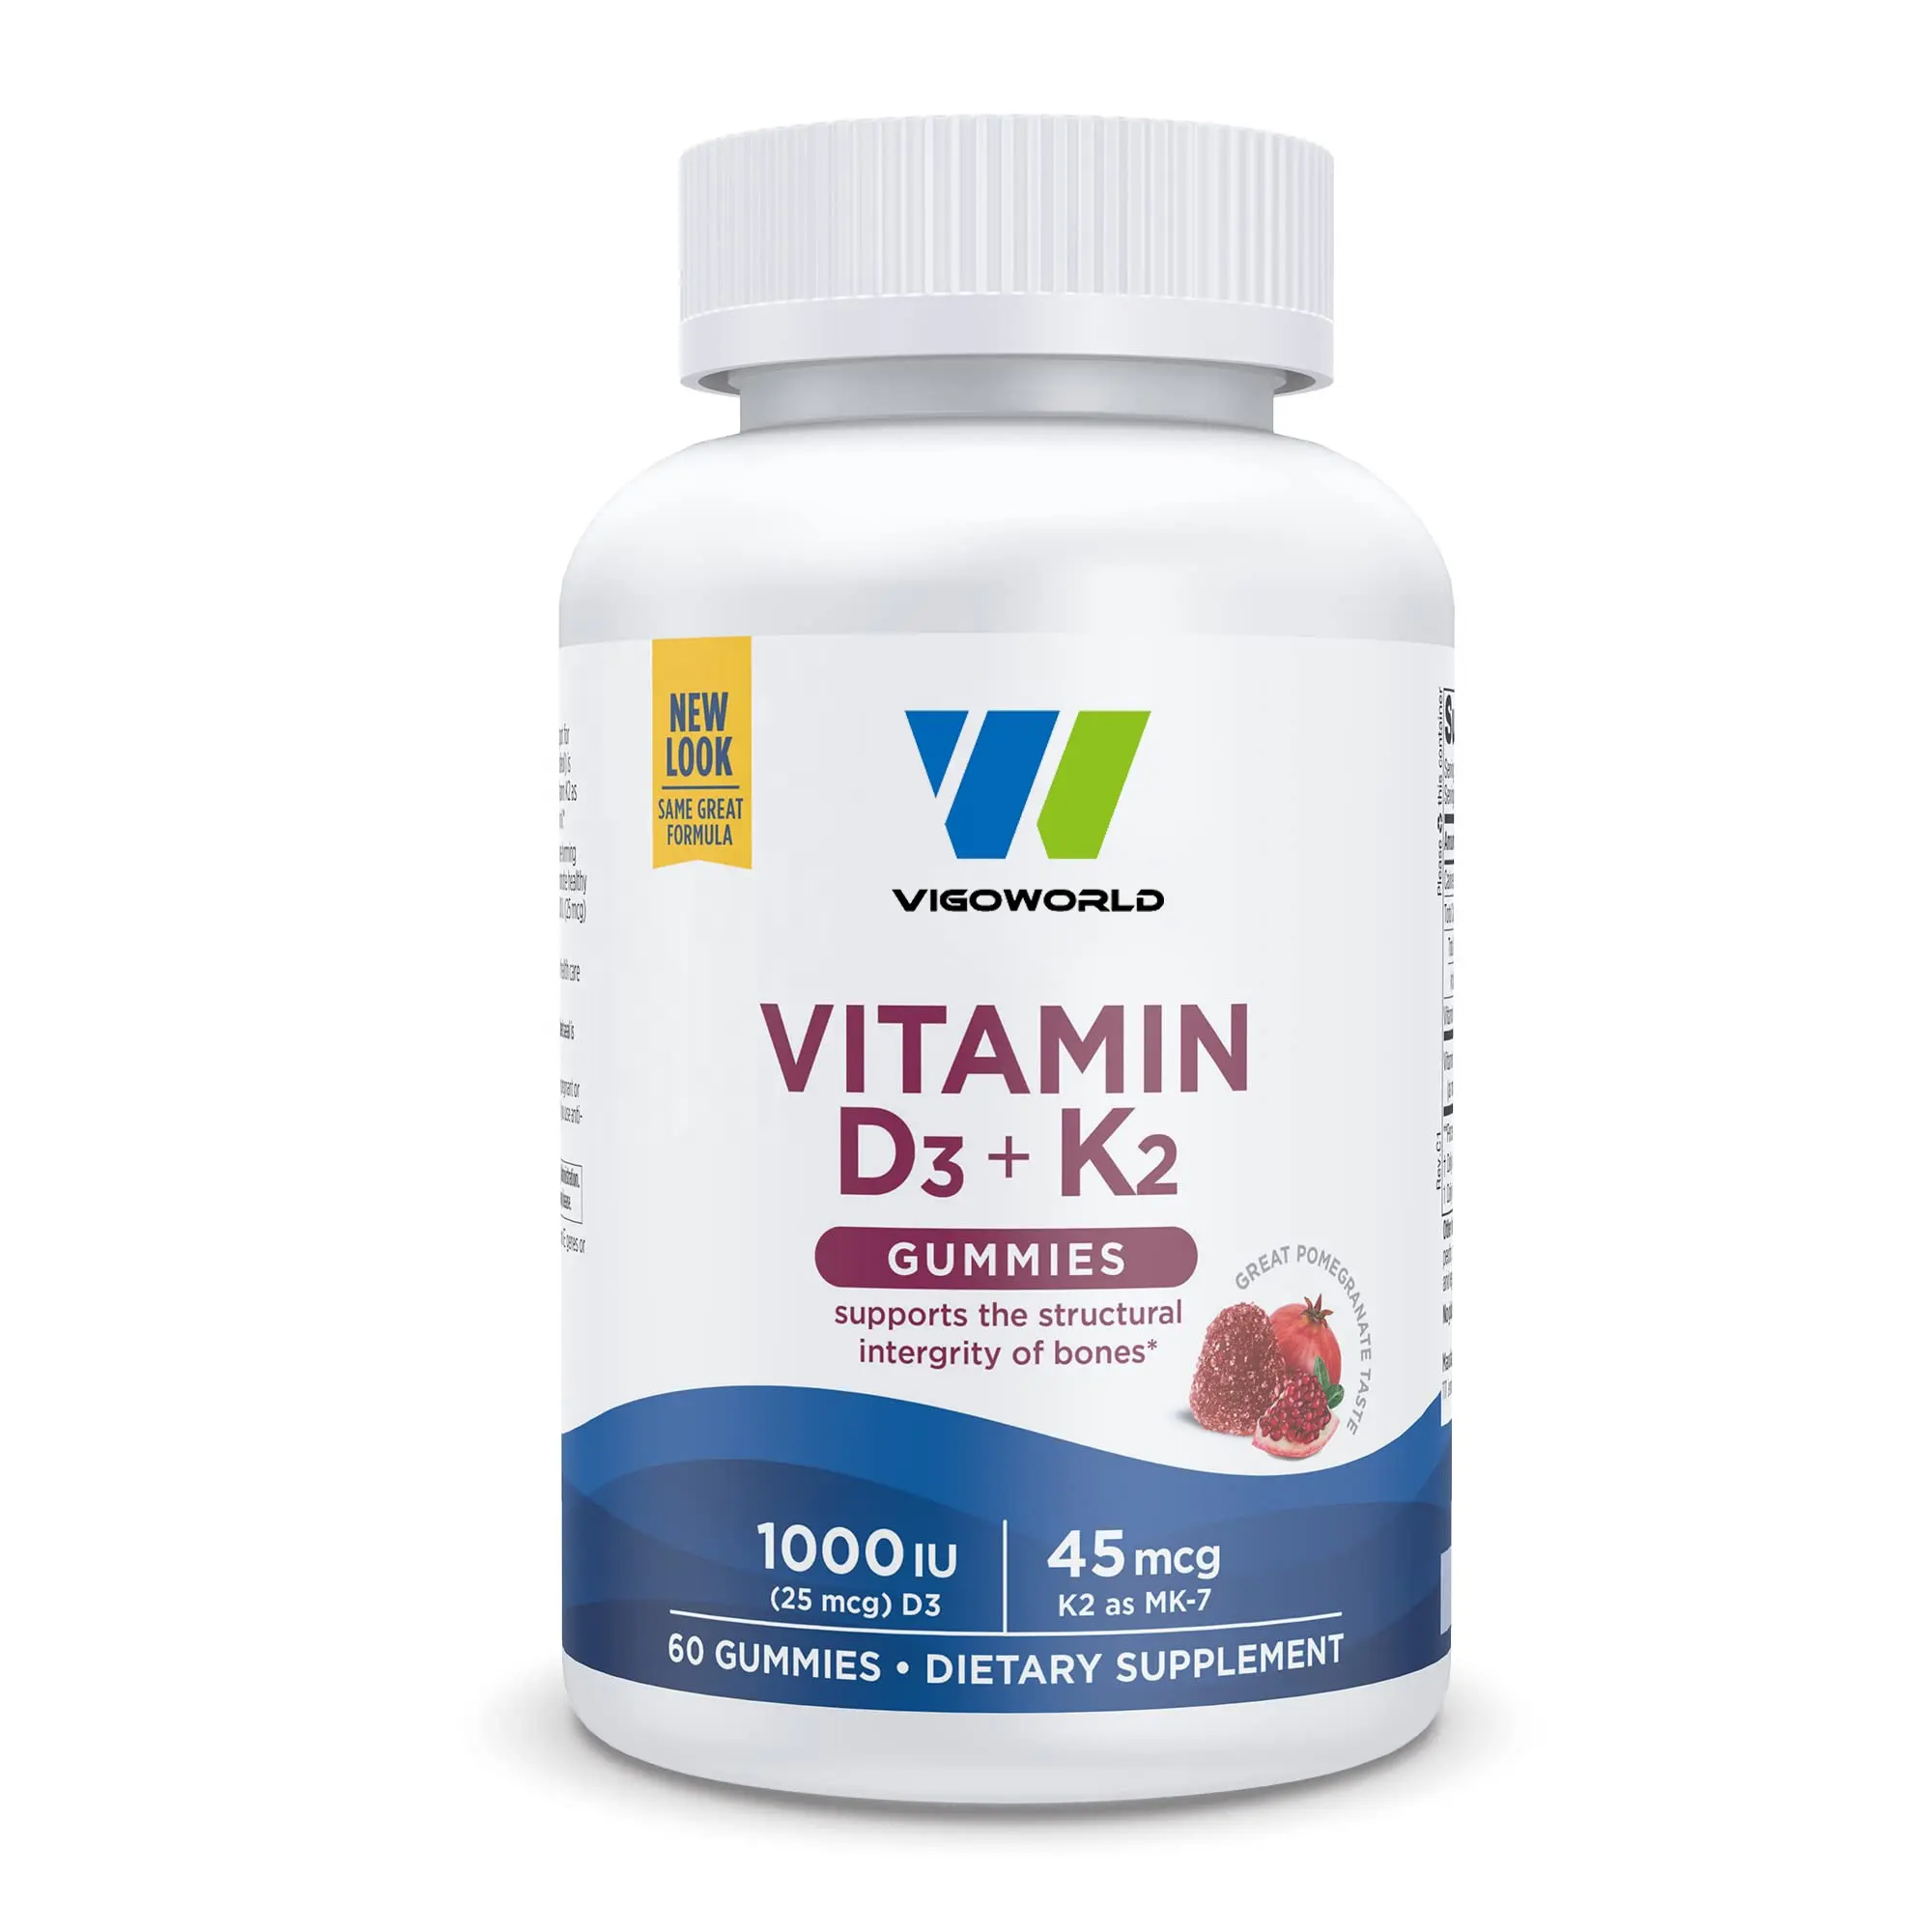 Les gommes végétaliennes vitamine D3 + K2 favorisent la fonction musculaire saine